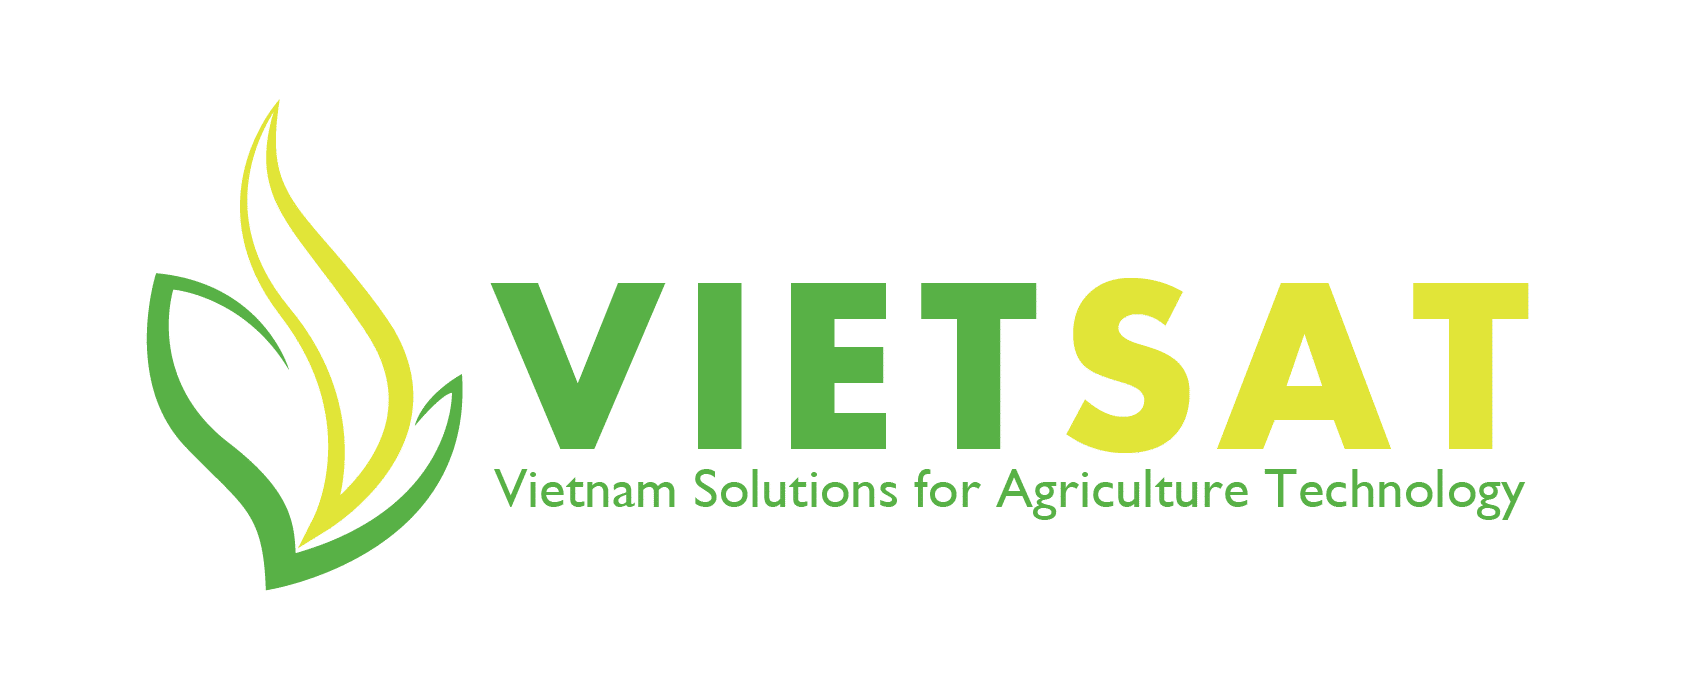 VIETSAT - Vietnam Solution for Agriculture Technology | www.vietsat.com.vn